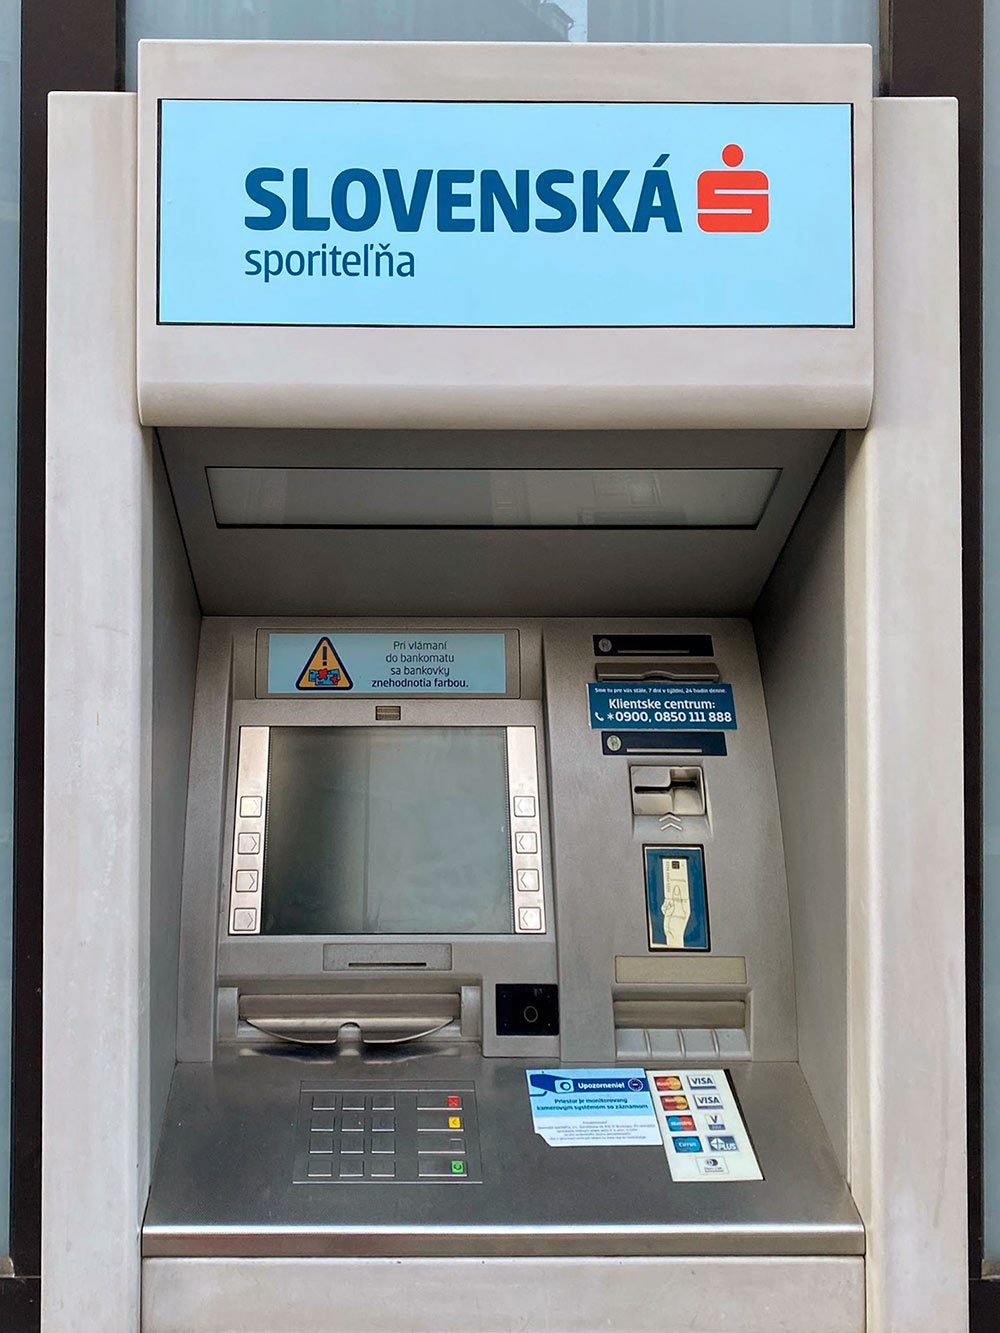 Банкомат Словацкого сберегательного банка: не все банкоматы оборудованы для внесения денег, некоторые их только выдают